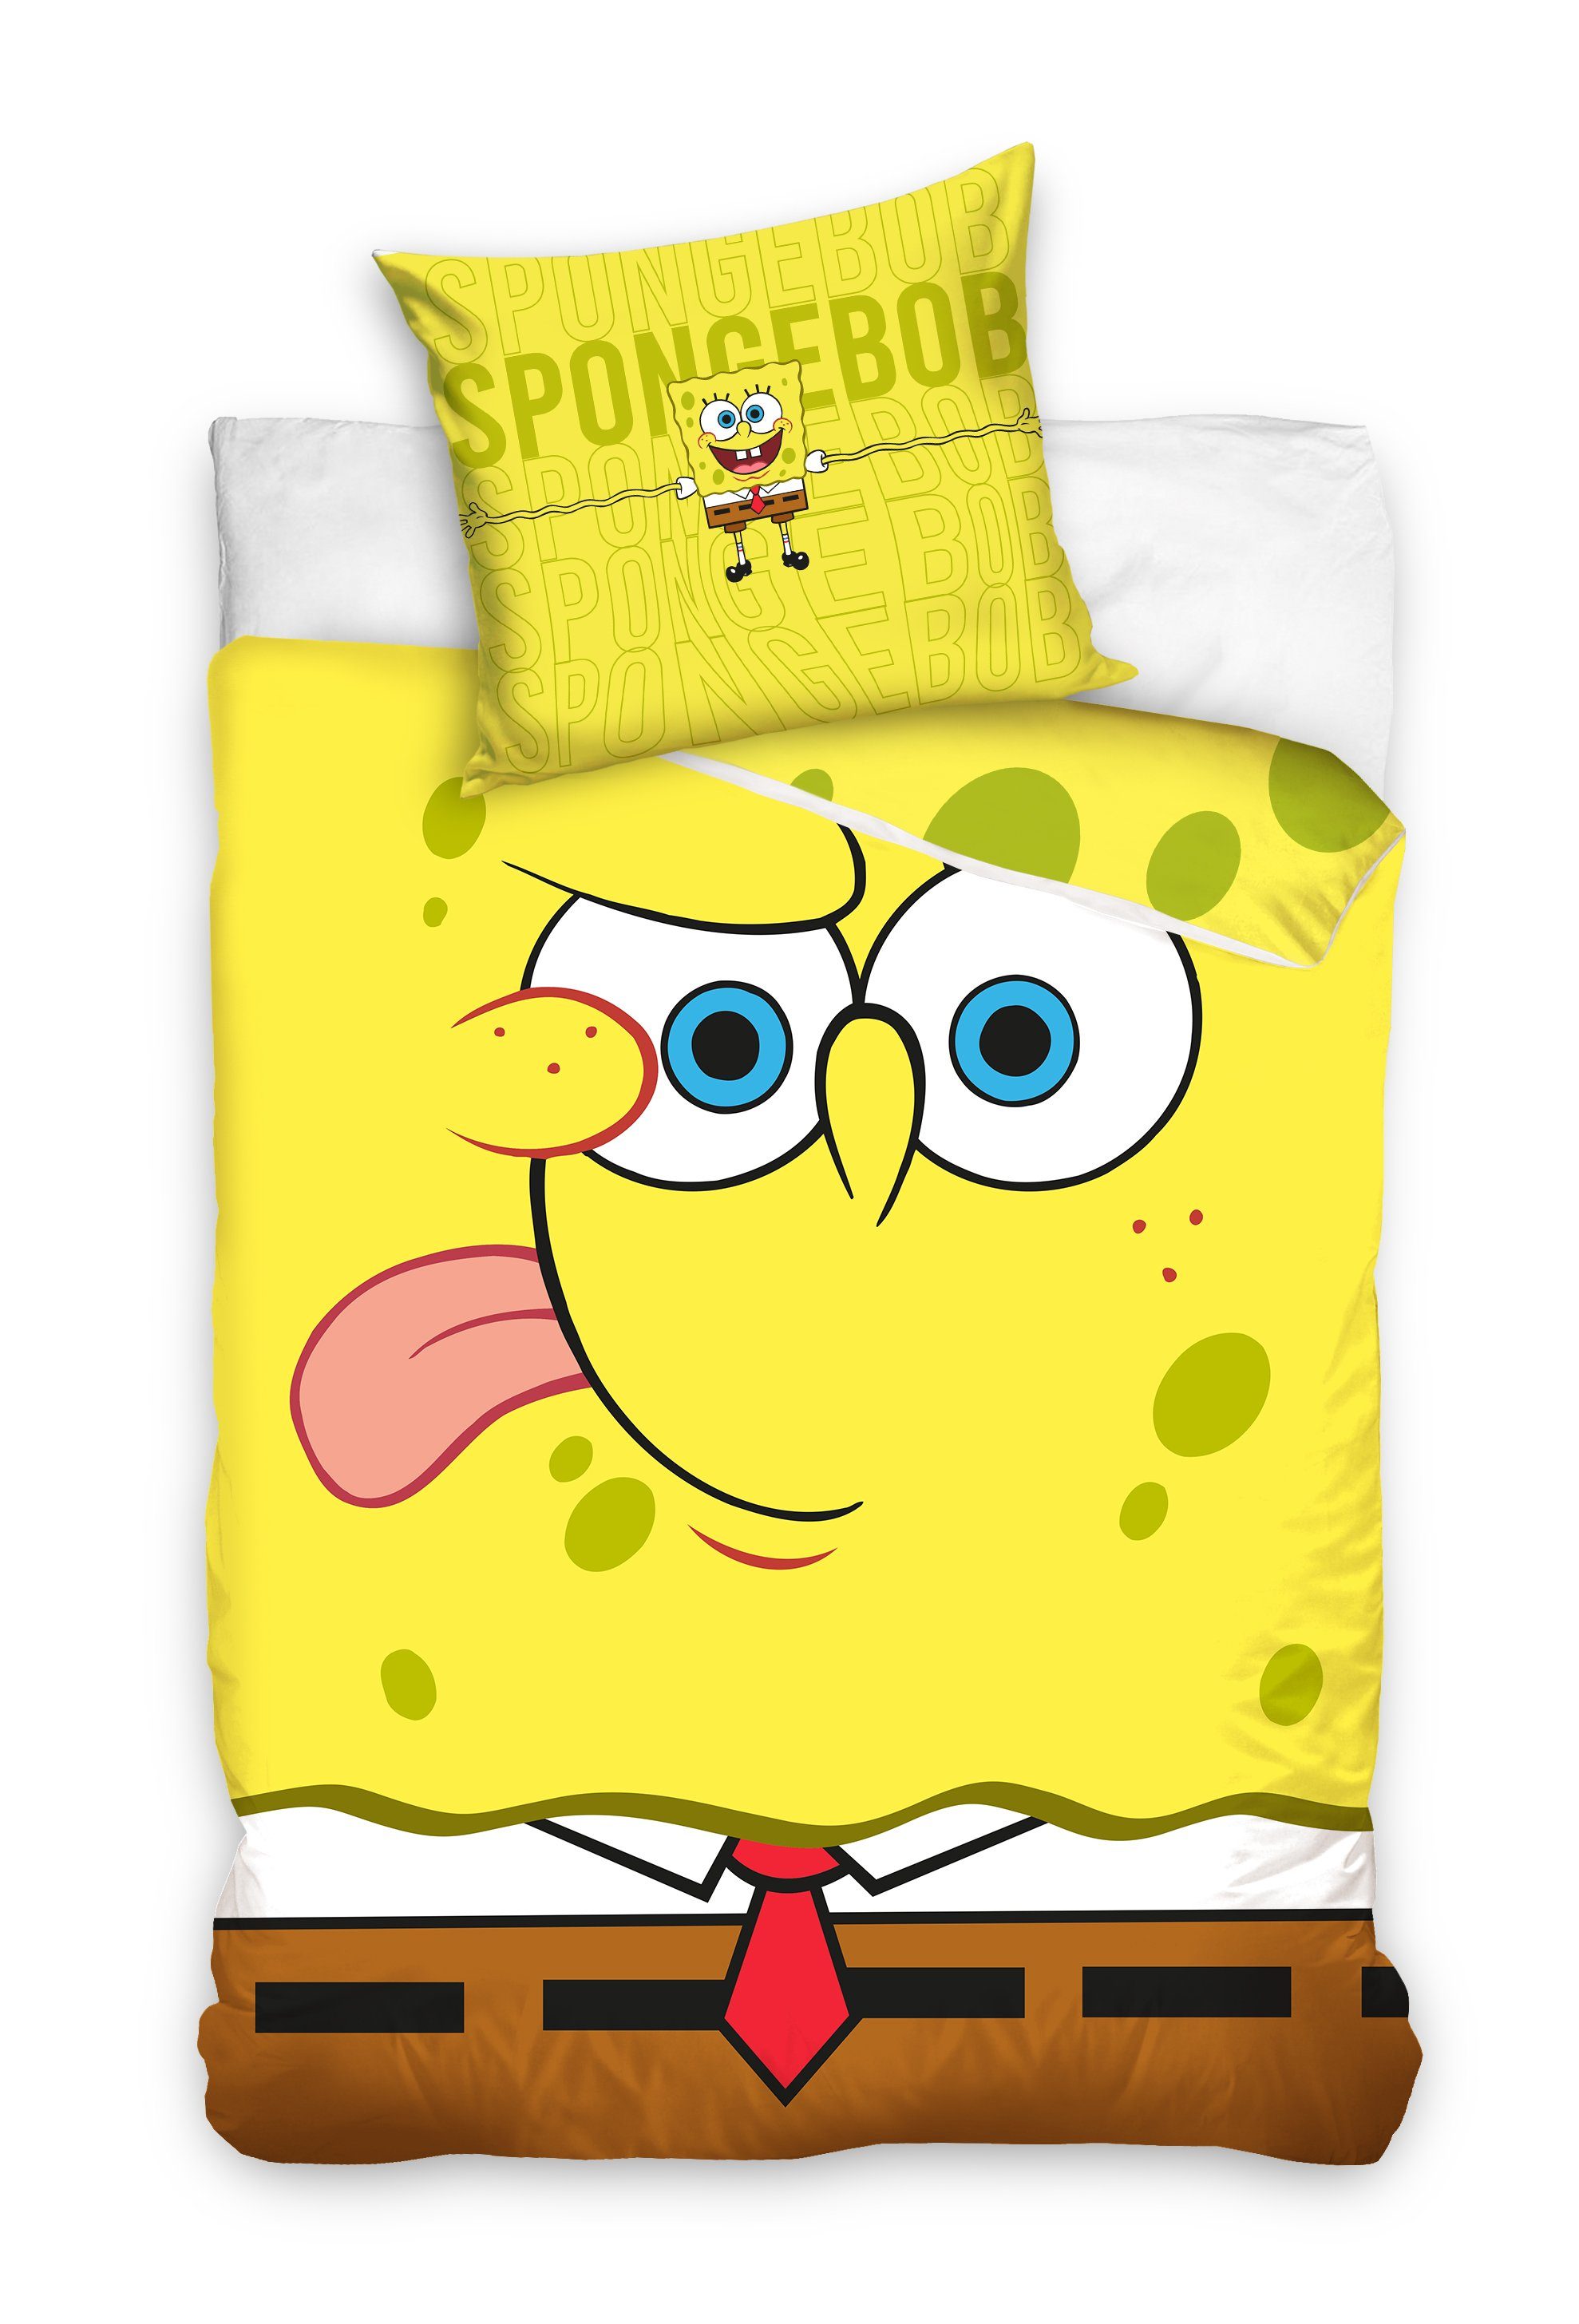 Bettwäsche Spongebob Schwammkopf Set Größe: 135x200 cm, 80x80 cm 100%  Baumwolle, Spongebob Schwammkopf, Baumwolle